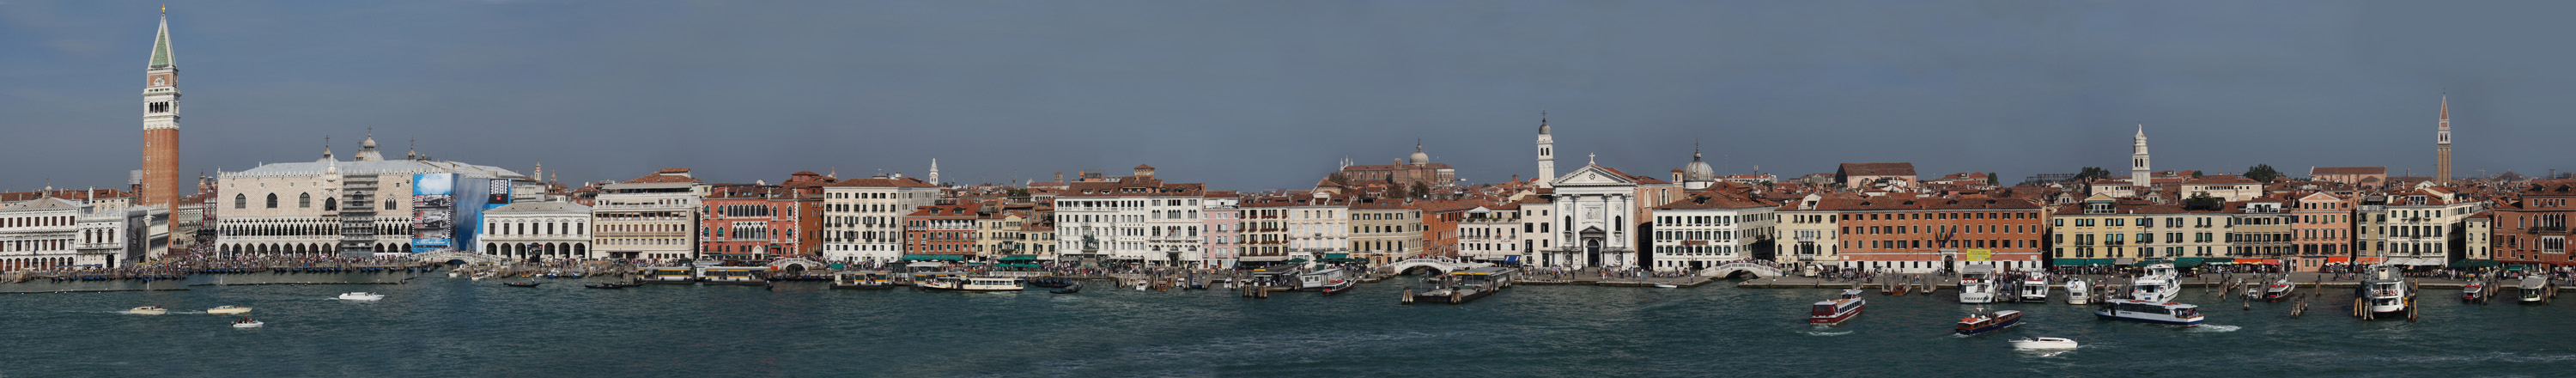 Venedig vom Canale Di San Marco  aus gesehen